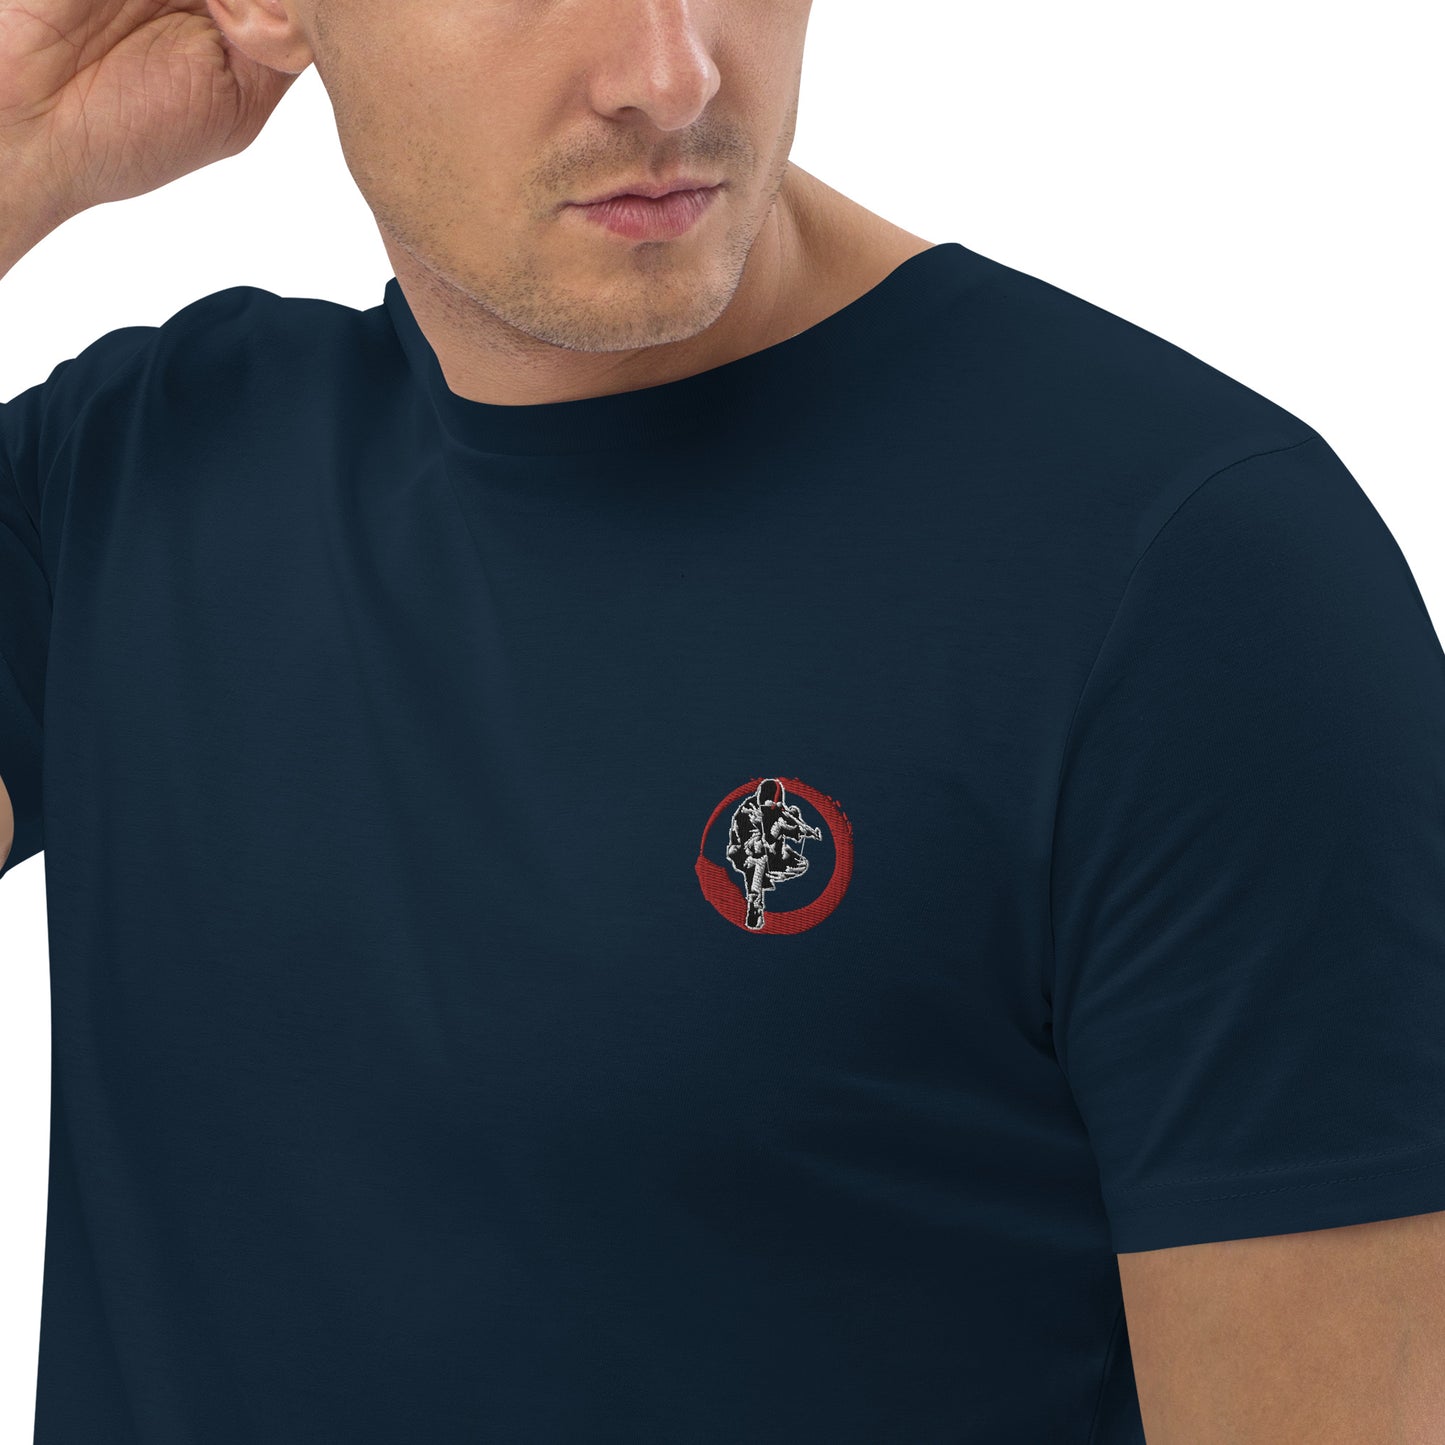 T-shirt unisexe en coton bio Ribellu Contour Rouge - Ochju Ochju French Navy / S Ochju T-shirt unisexe en coton bio Ribellu Contour Rouge